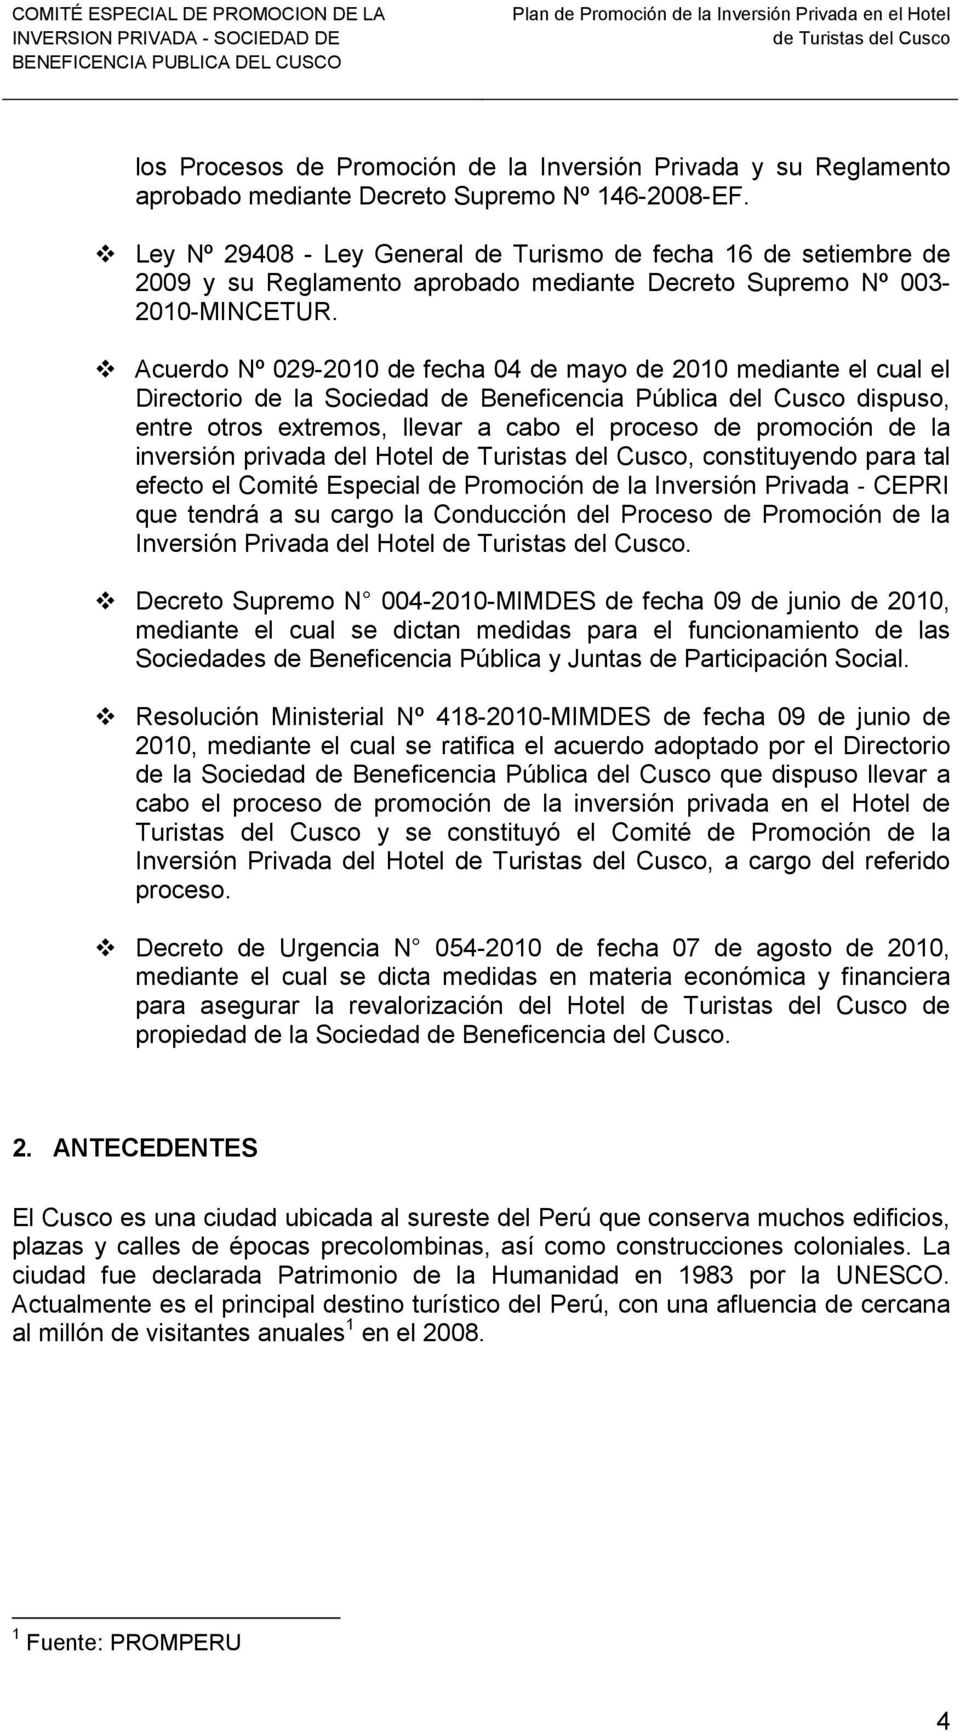 Acuerdo Nº 029-2010 de fecha 04 de mayo de 2010 mediante el cual el Directorio de la Sociedad de Beneficencia Pública del Cusco dispuso, entre otros extremos, llevar a cabo el proceso de promoción de